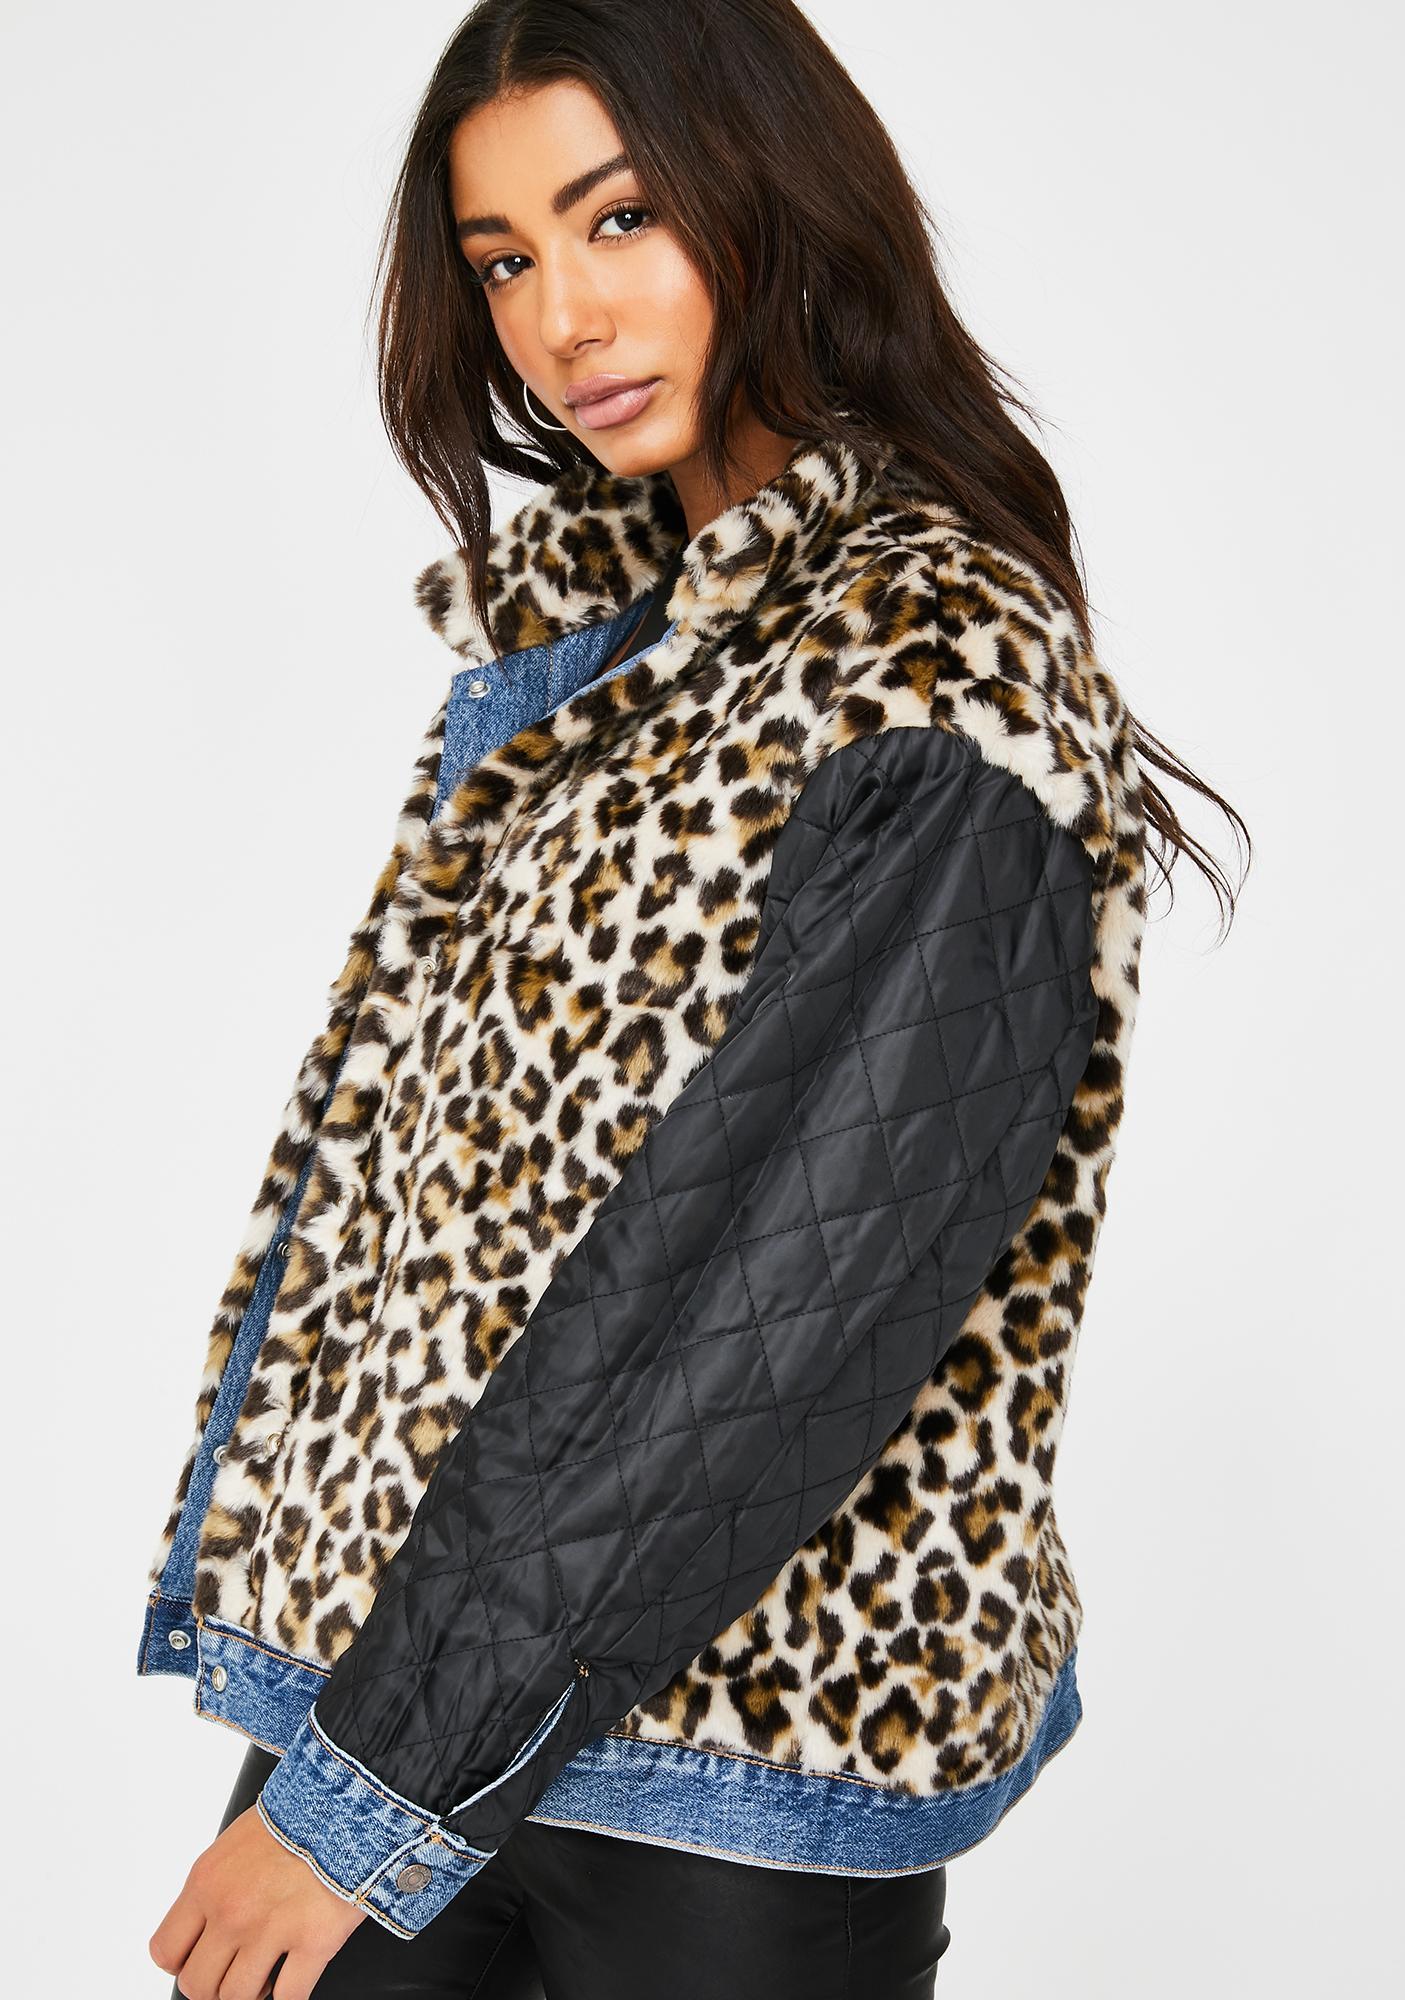 levis cheetah jacket